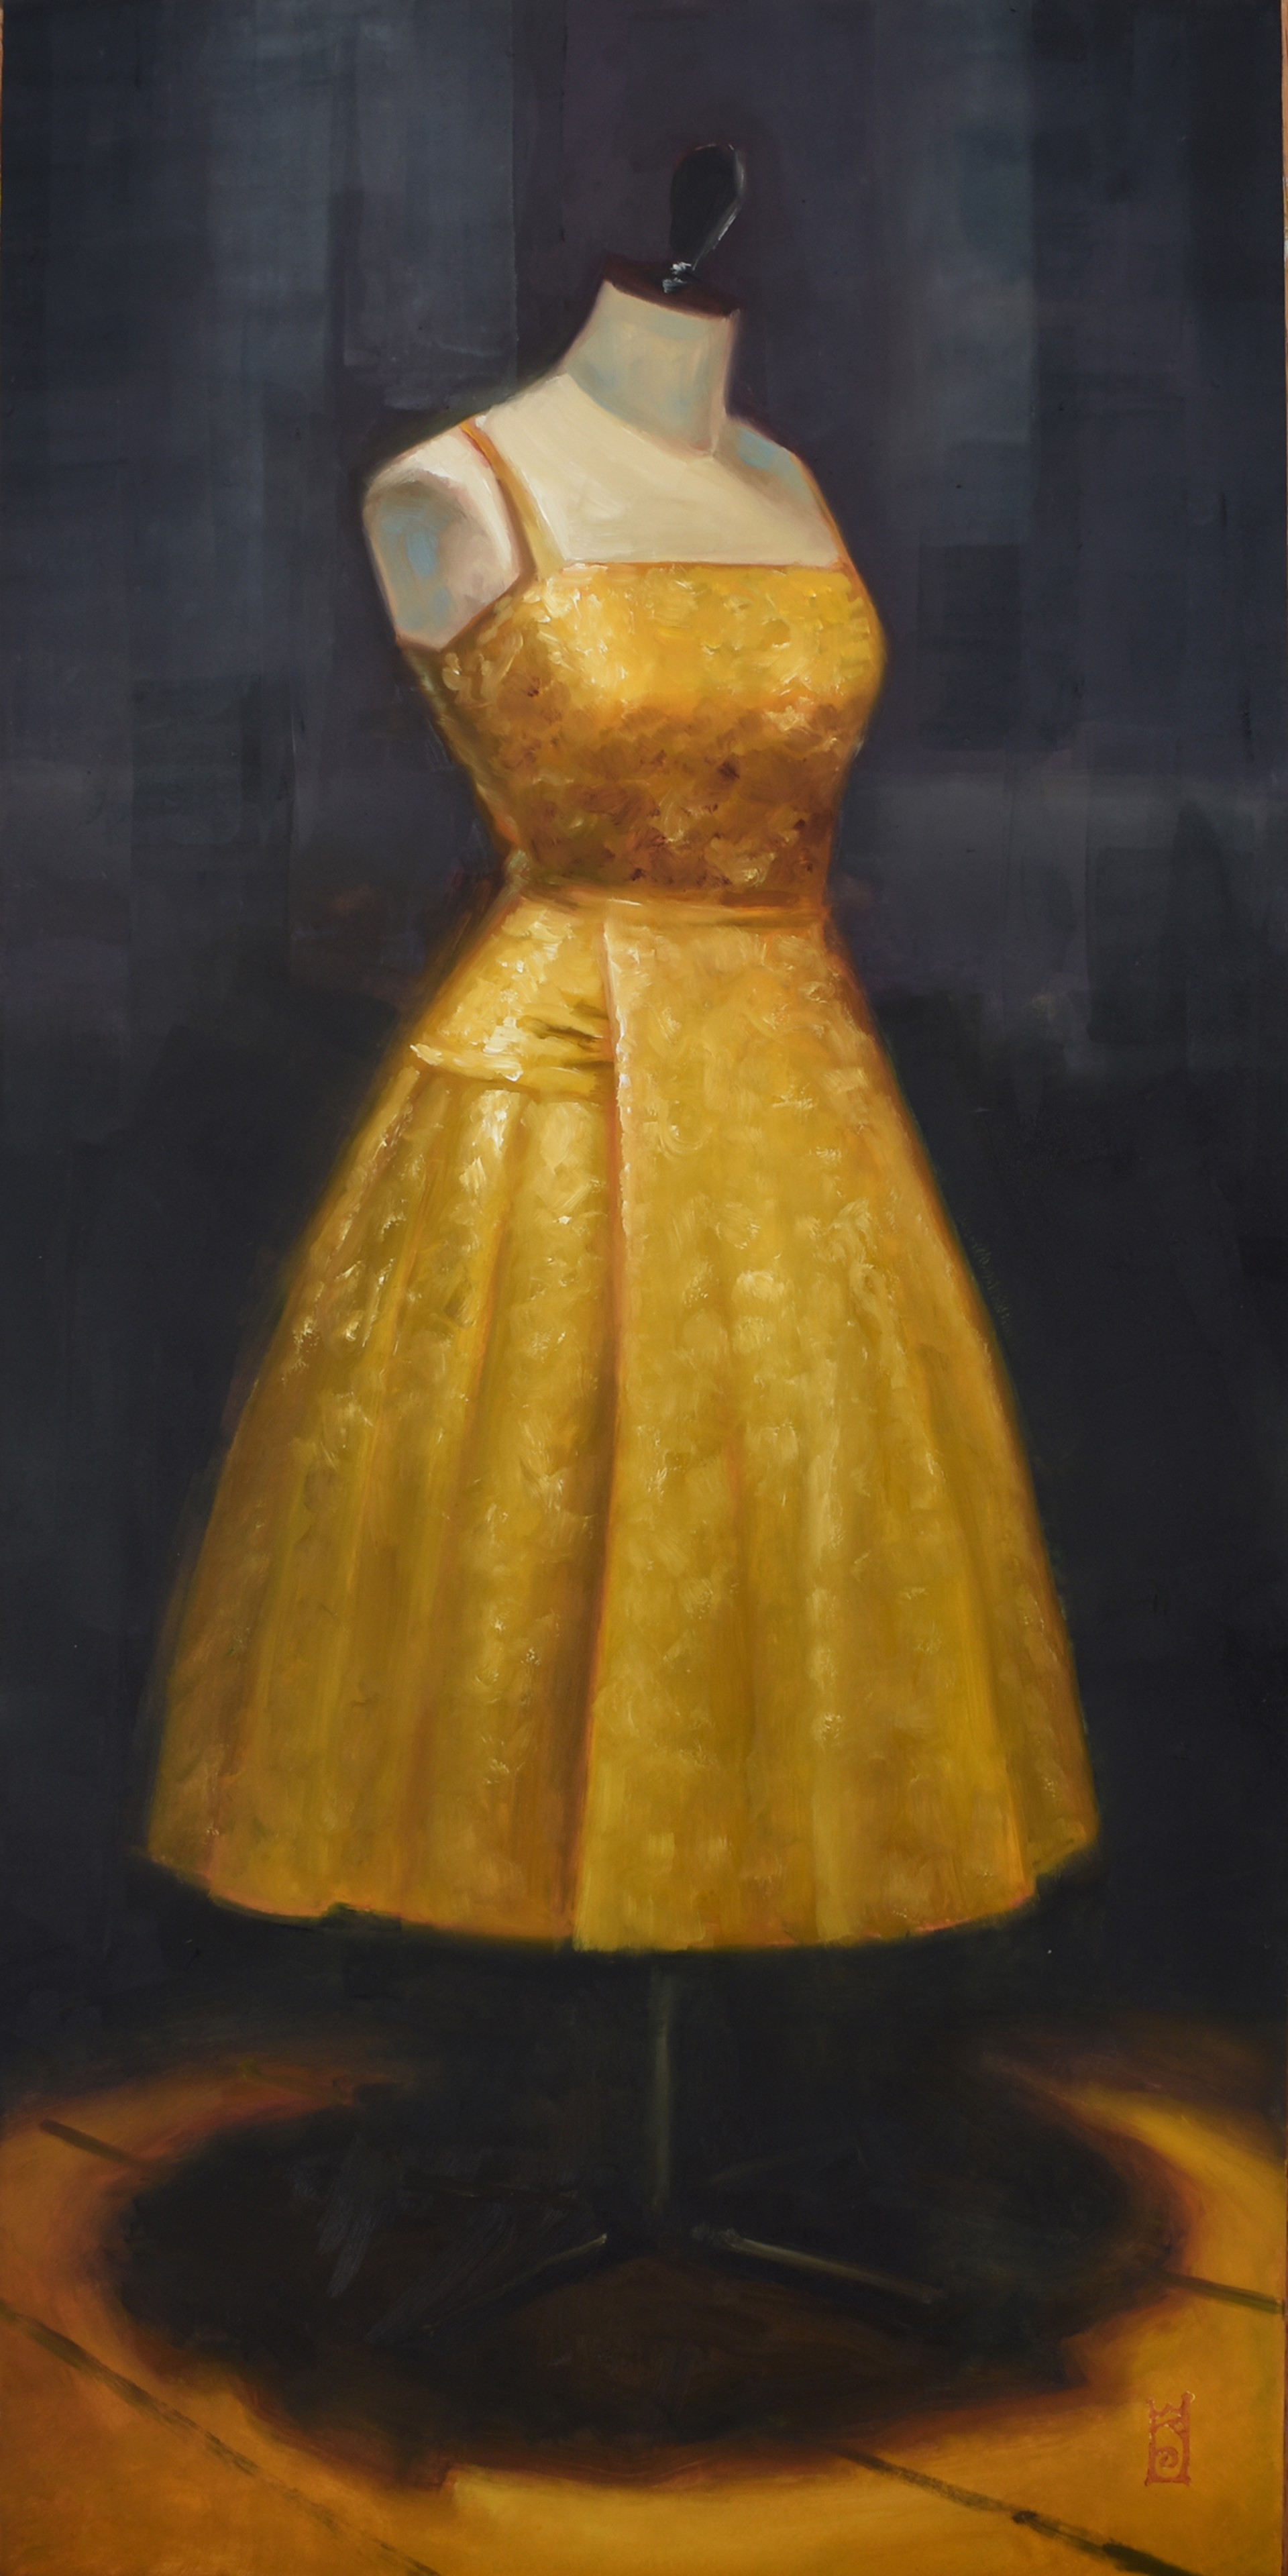 Dressed in Gold by Steven Walker